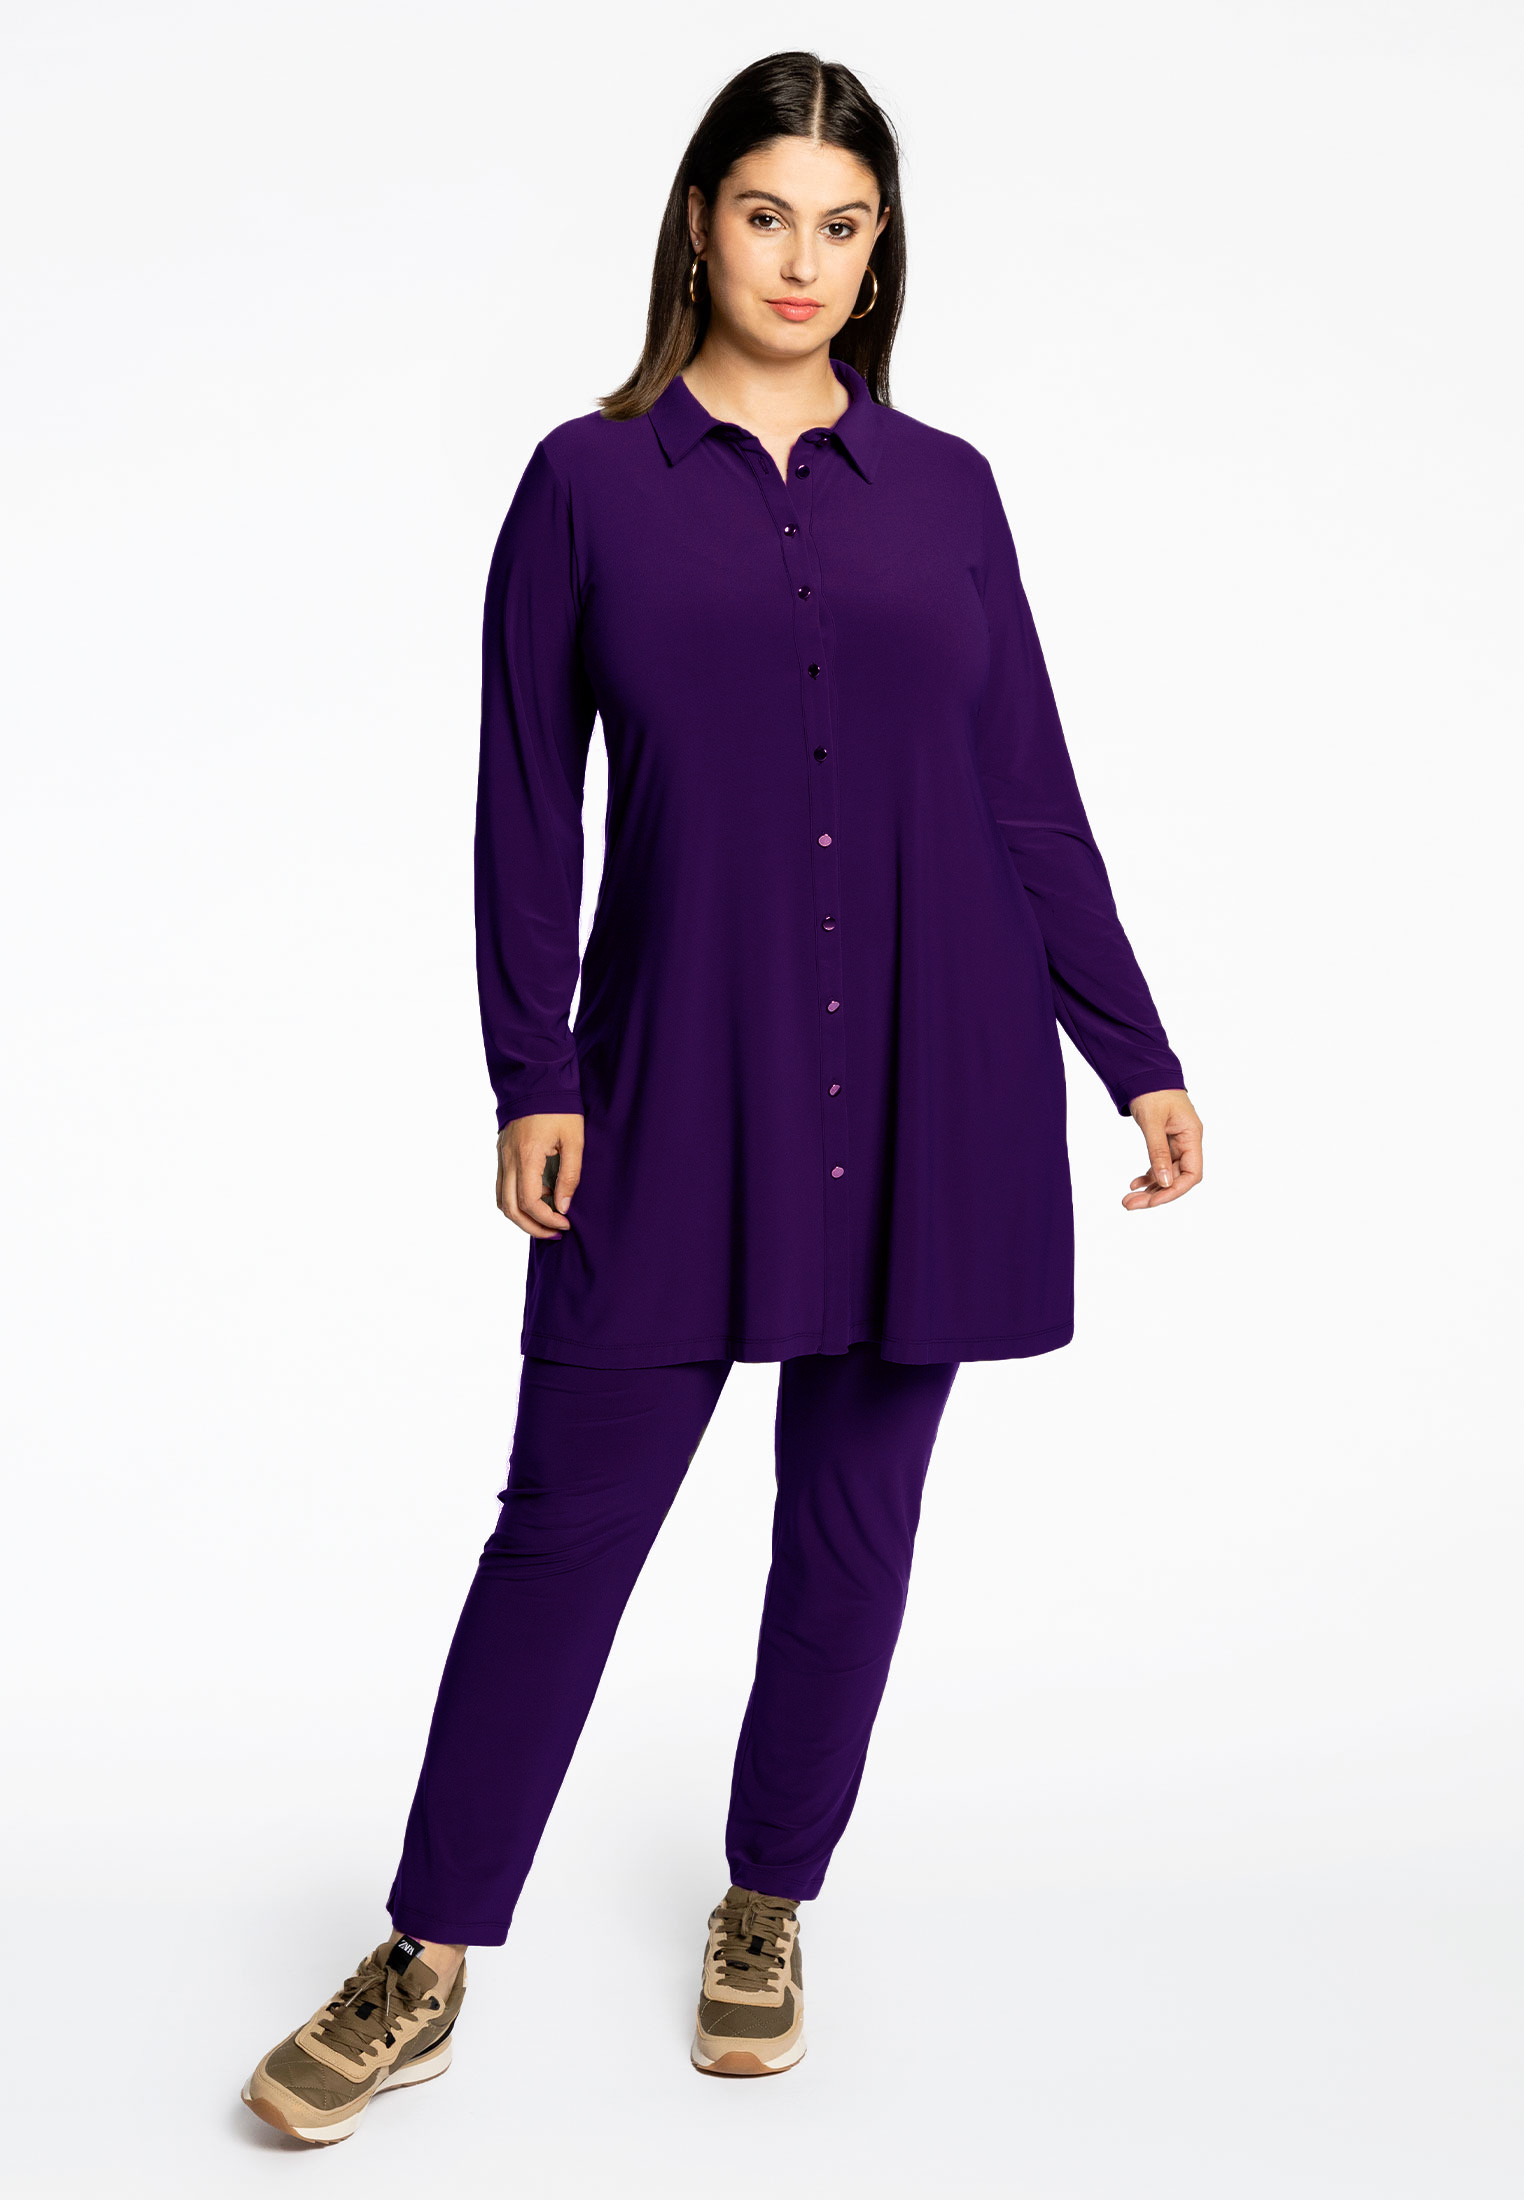 Pantalon DOLCE 58/60 purple